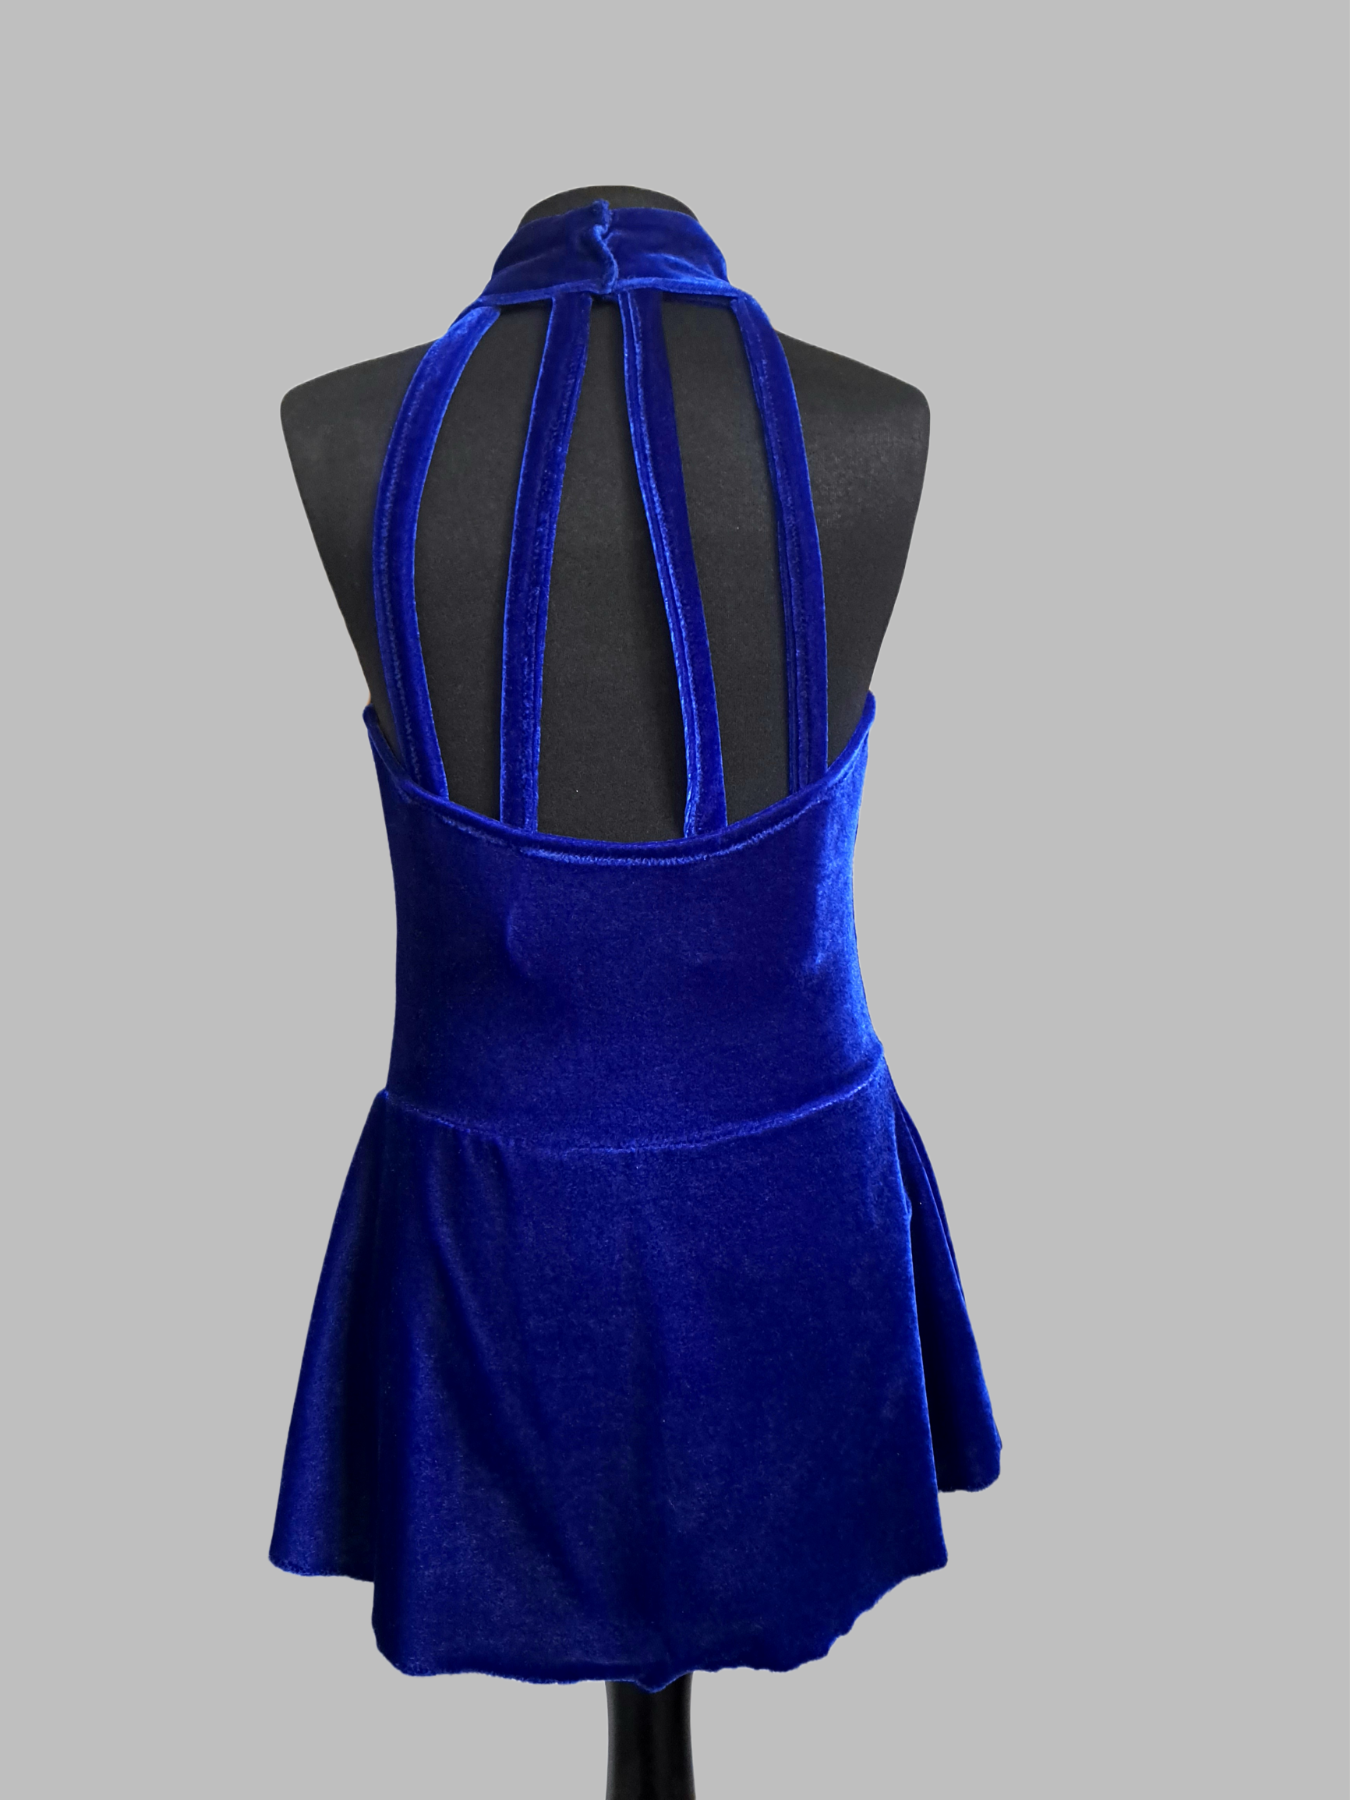 Elegantes gebrauchtes Neckholder- Kürkleid aus dunkelblauem Stretch-Samt - Größe 128-134 2